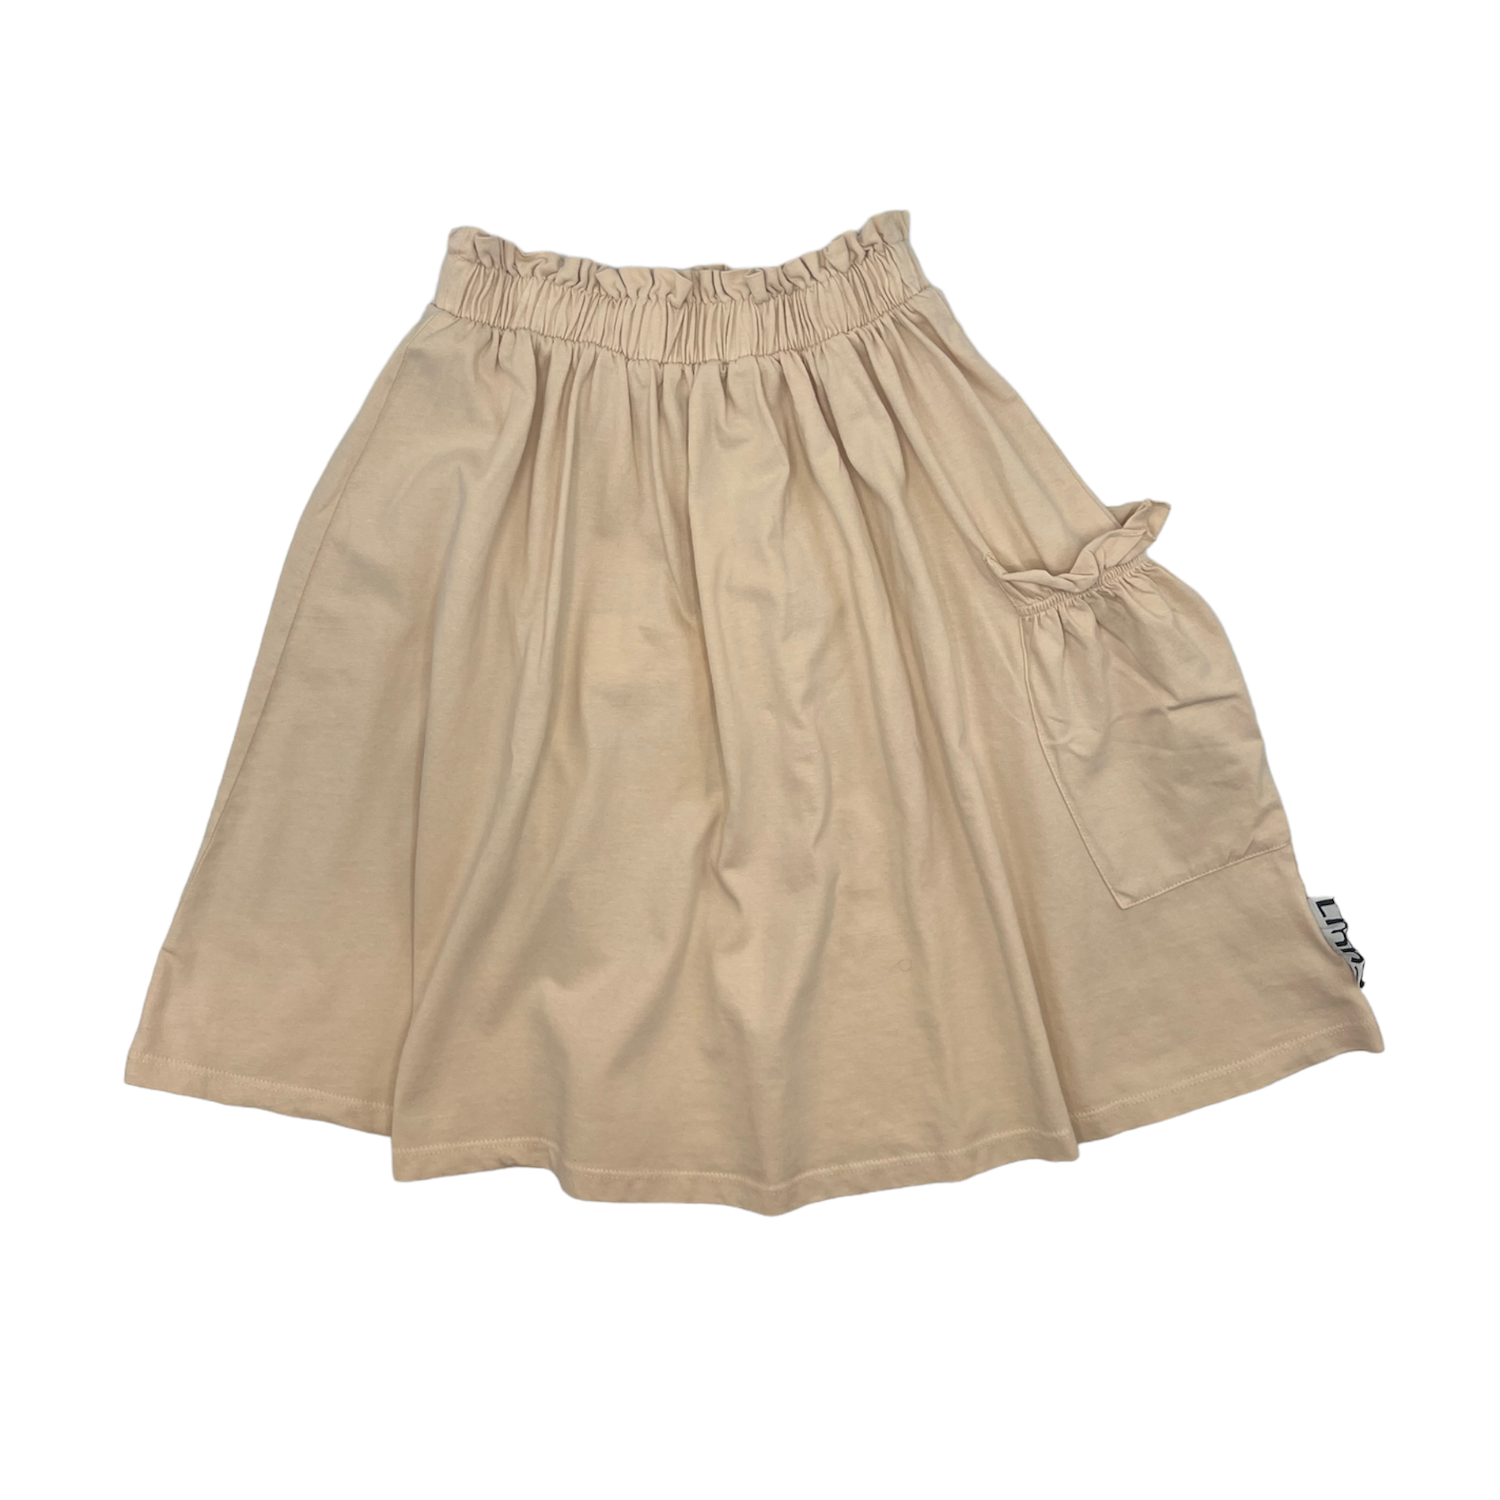 Lmn3 Pocket Skirt - Ivory Cream